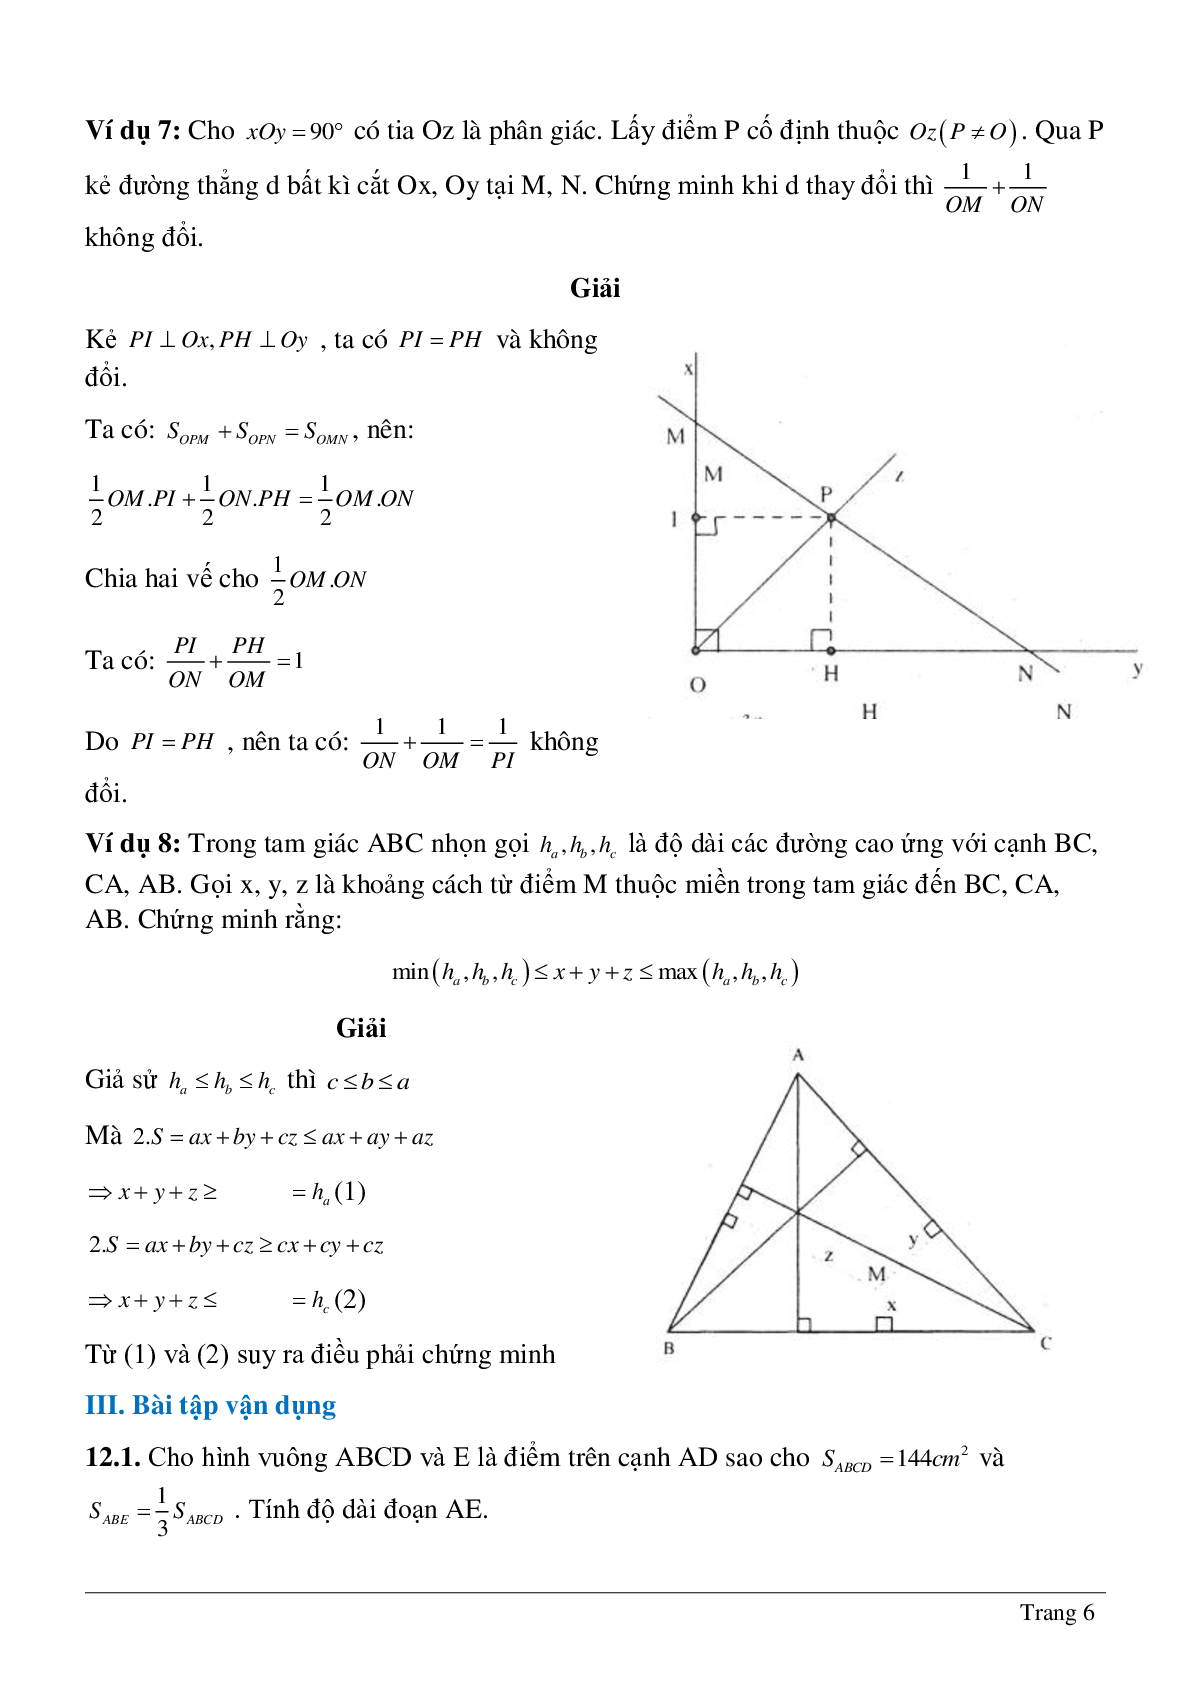 Phương pháp diện tích - Hình học toán 8 (trang 6)